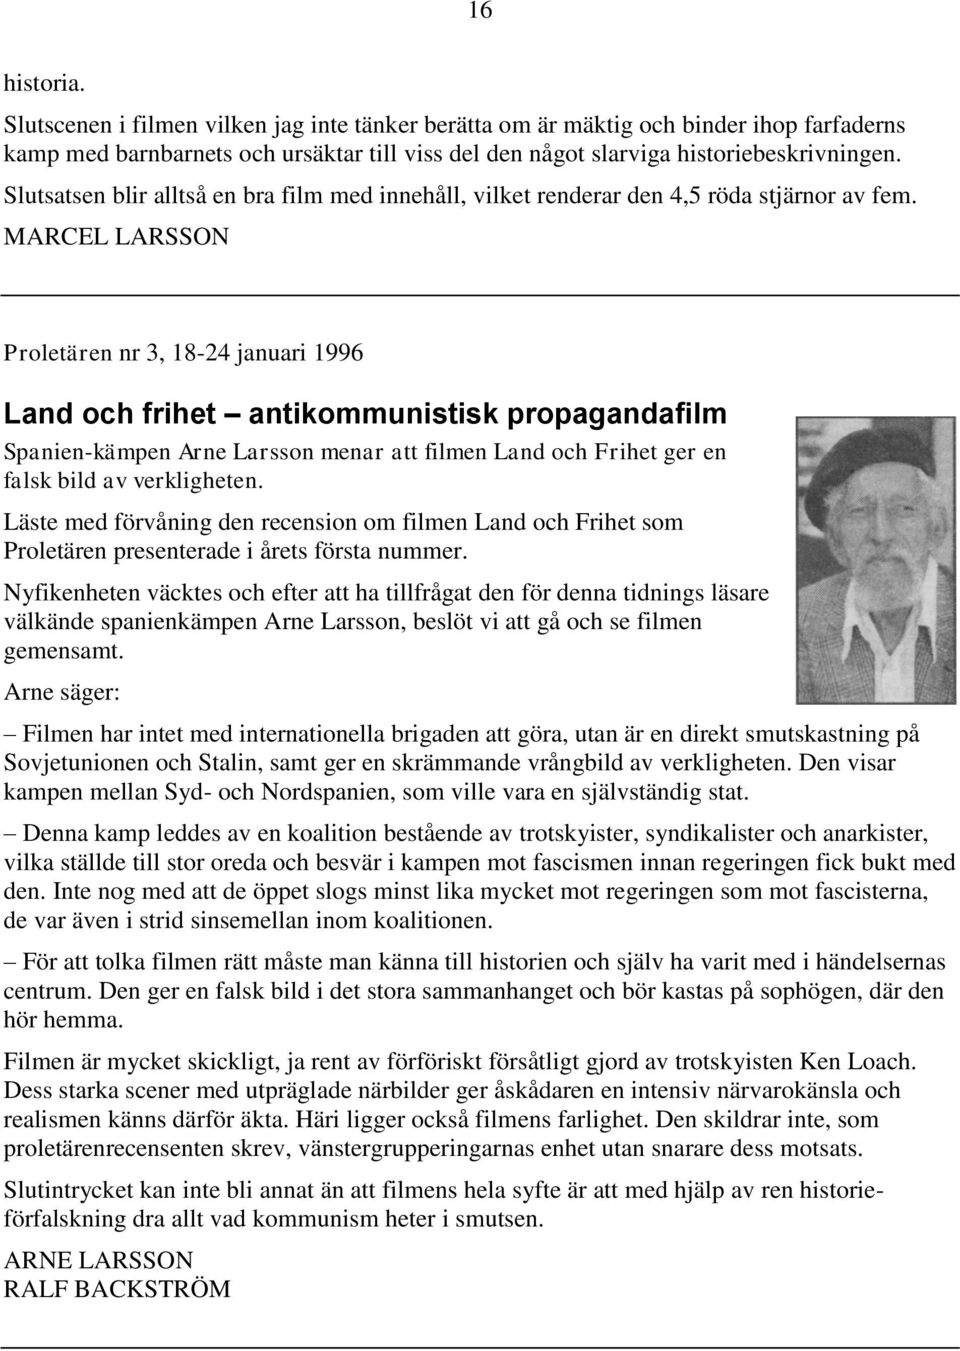 MARCEL LARSSON Proletären nr 3, 18-24 januari 1996 Land och frihet antikommunistisk propagandafilm Spanien-kämpen Arne Larsson menar att filmen Land och Frihet ger en falsk bild av verkligheten.